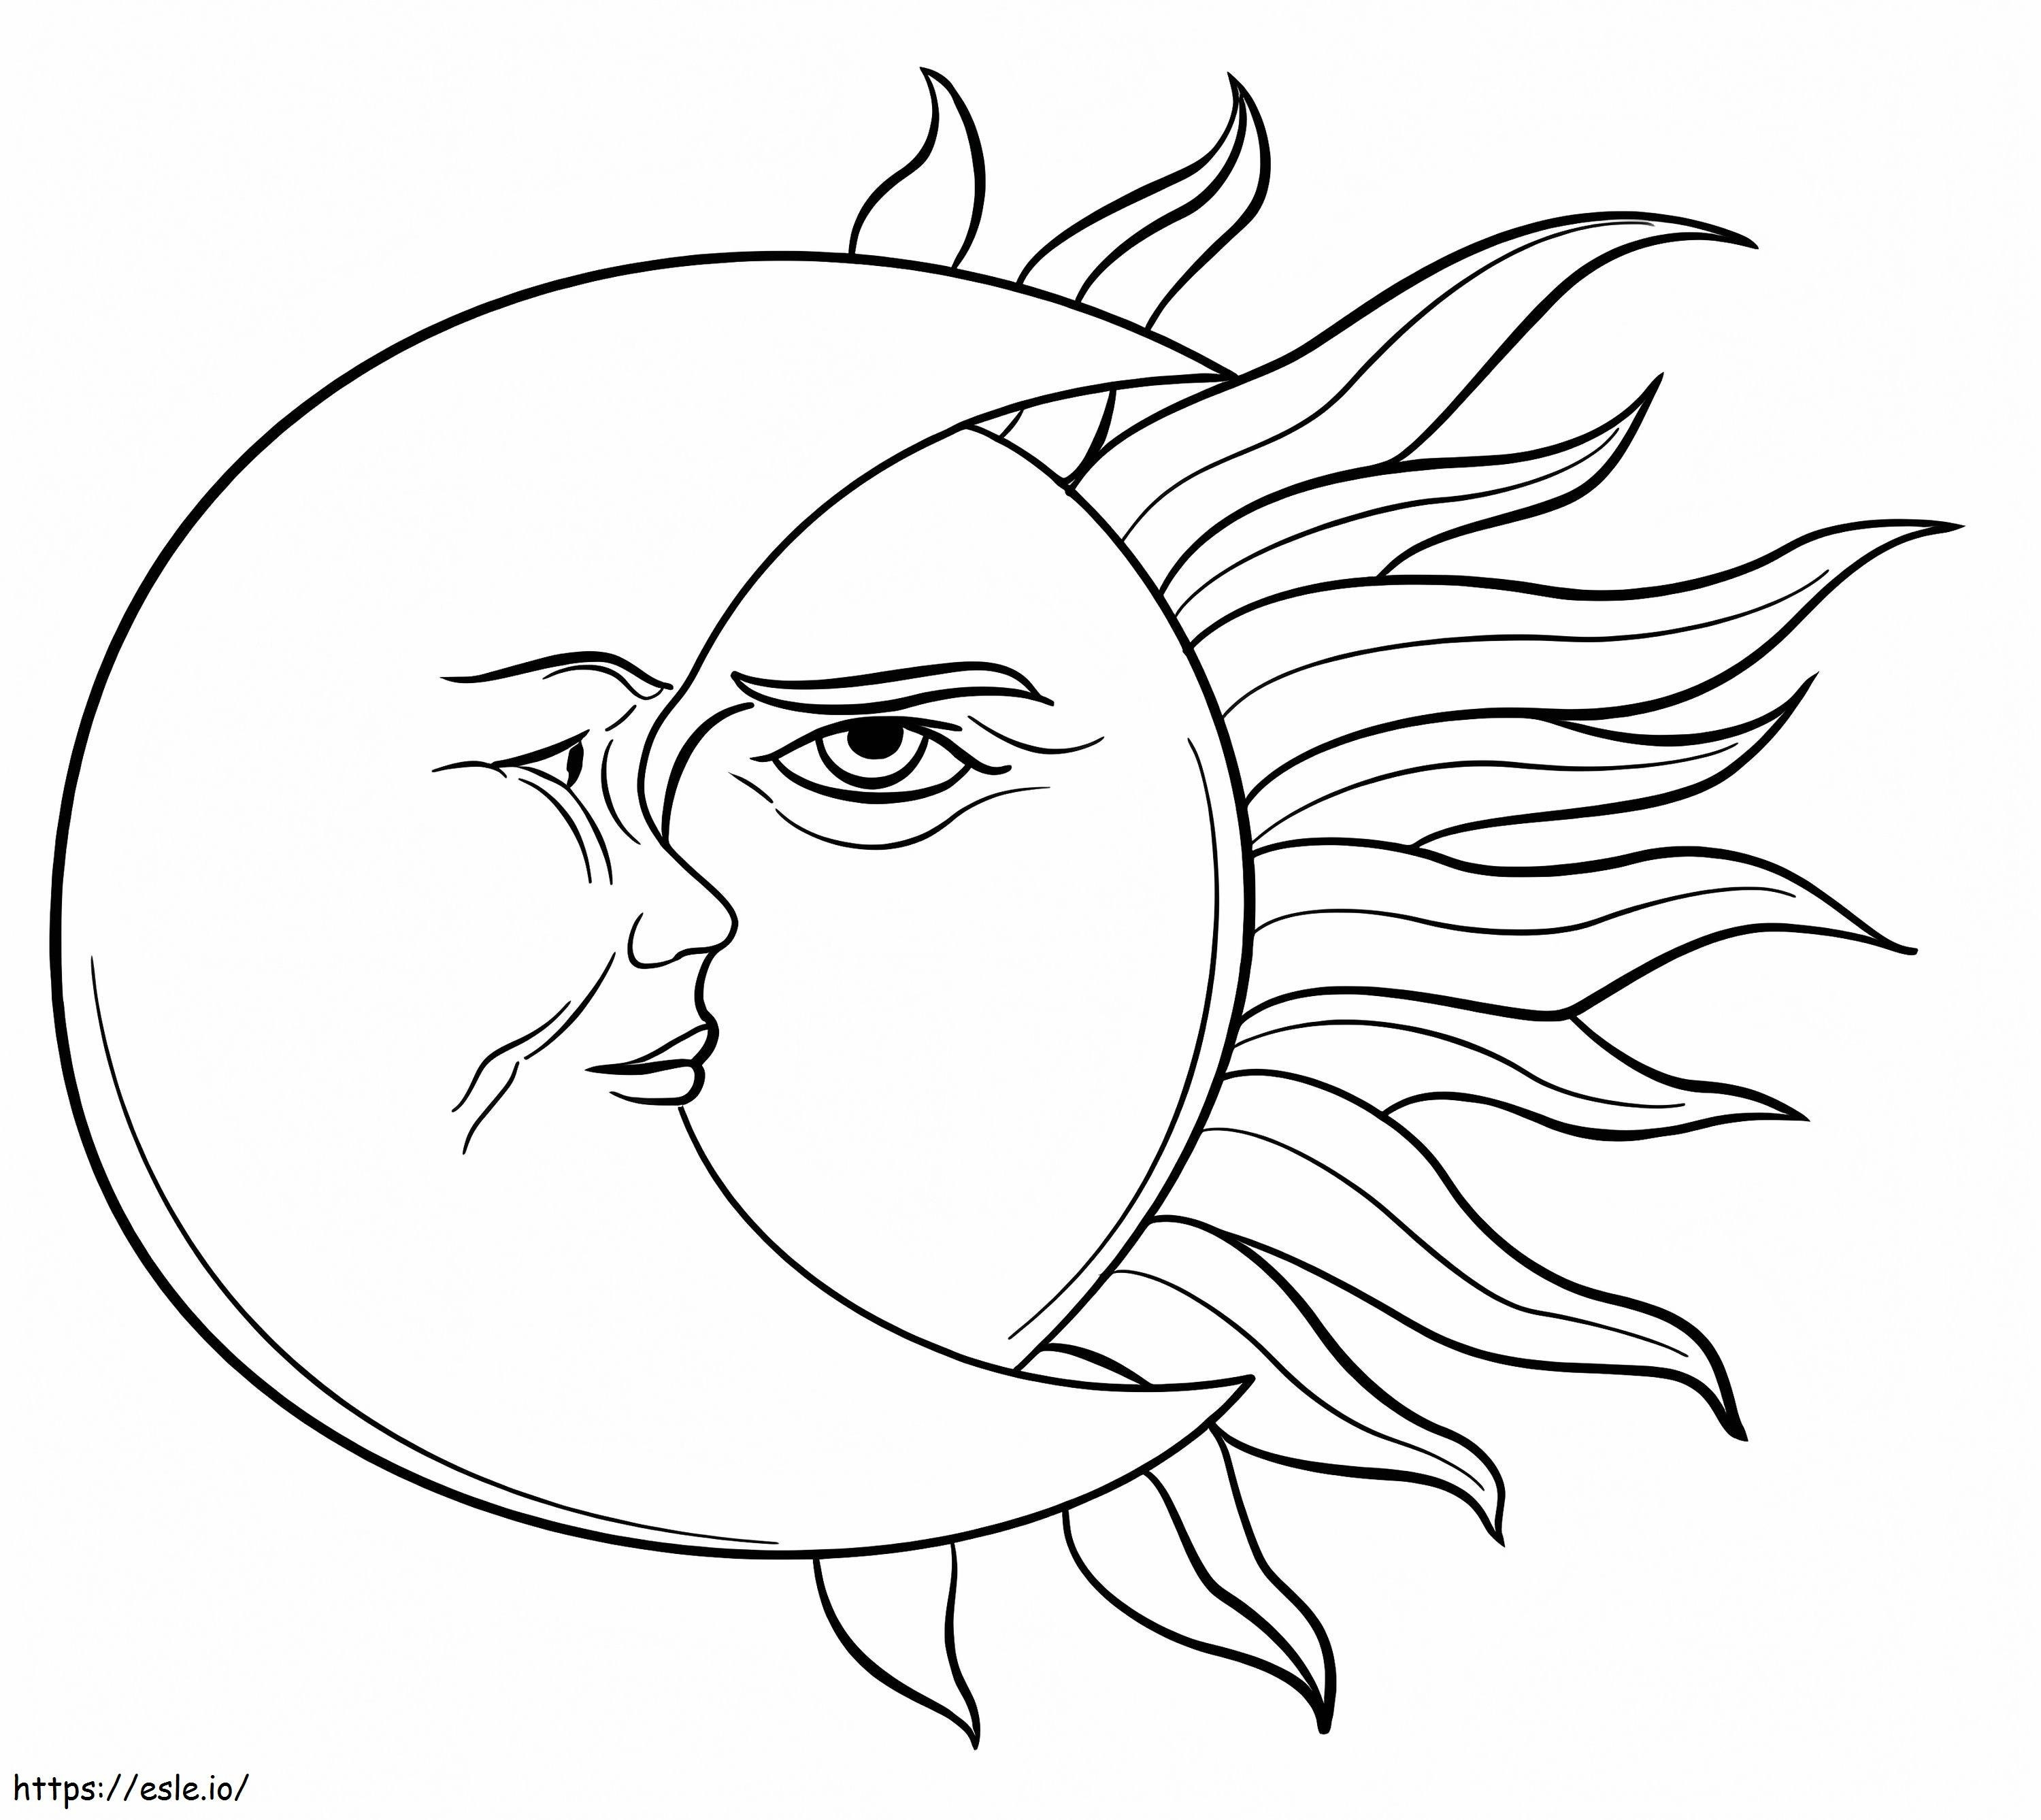 Sonne und Mond 3 ausmalbilder